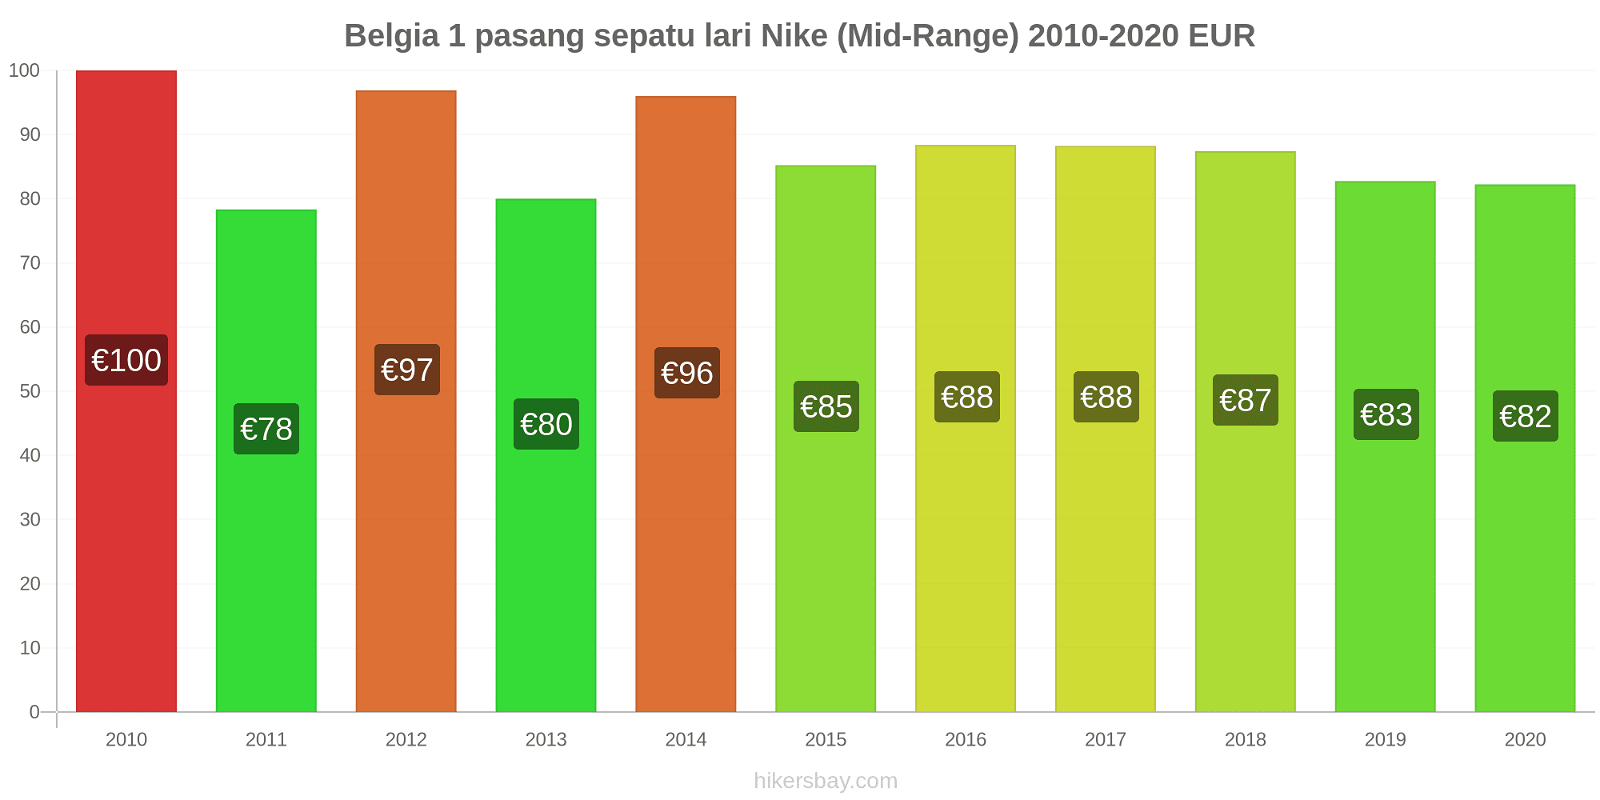 Belgia perubahan harga 1 pasang sepatu lari Nike (Mid-Range) hikersbay.com